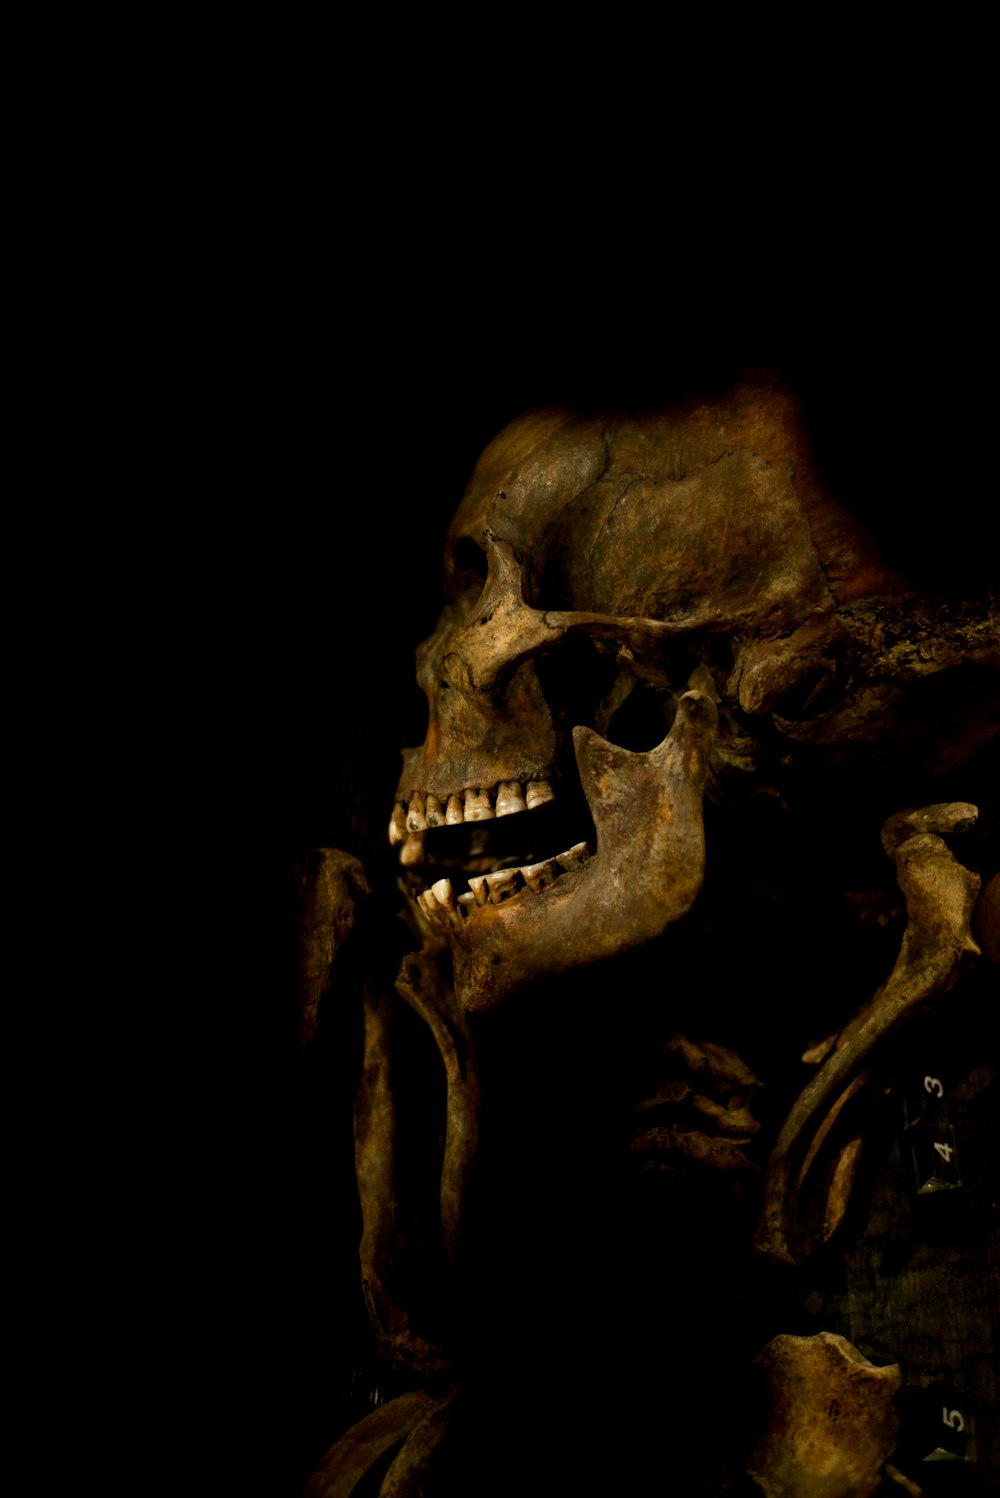 um esqueleto humano com um olhar assustador em seu rosto